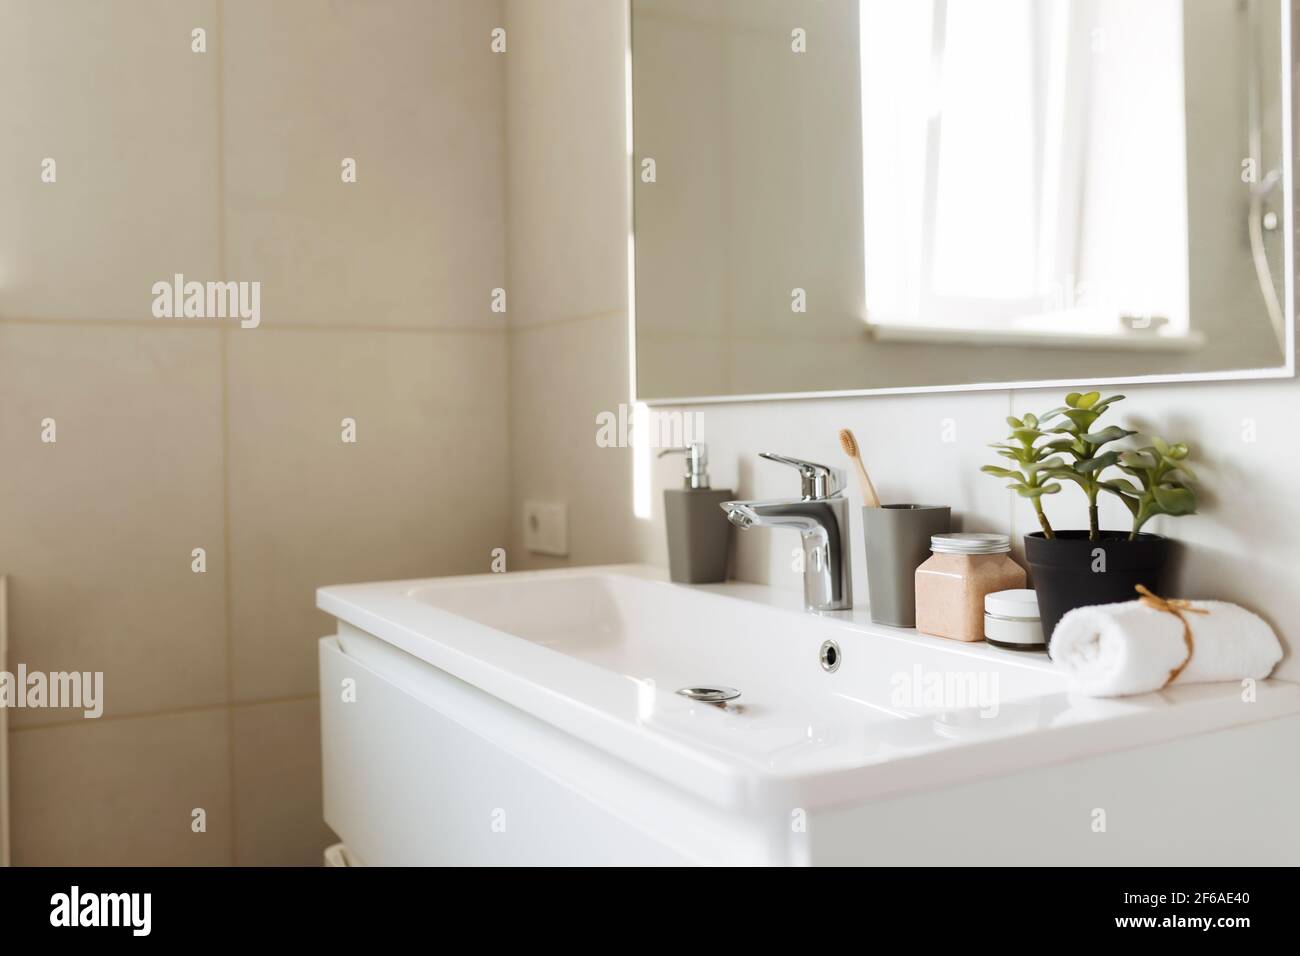 Lavabo dans la salle de bains blanche avec accessoires de bain. Concept de nettoyage de l'hôtel. Concept de ménage. Photo de haute qualité Banque D'Images